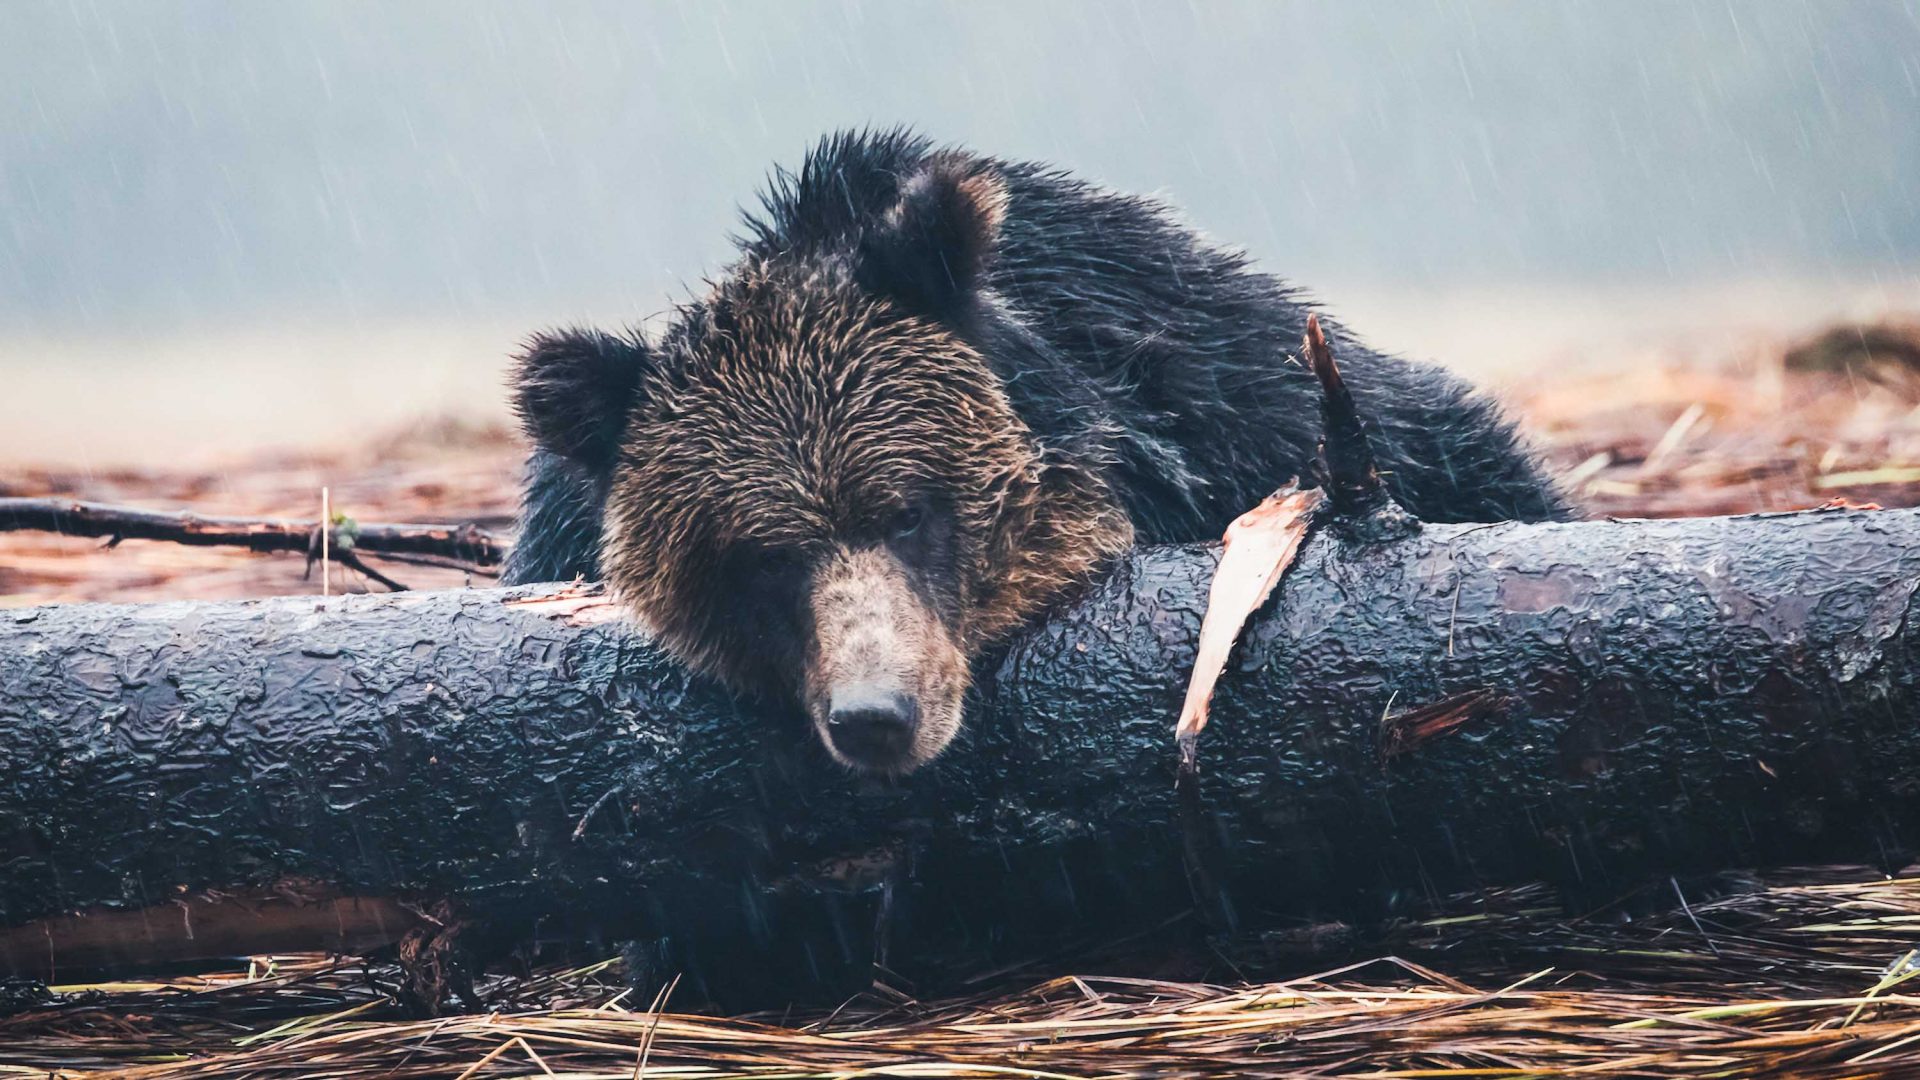 A bear sleeps on a log.